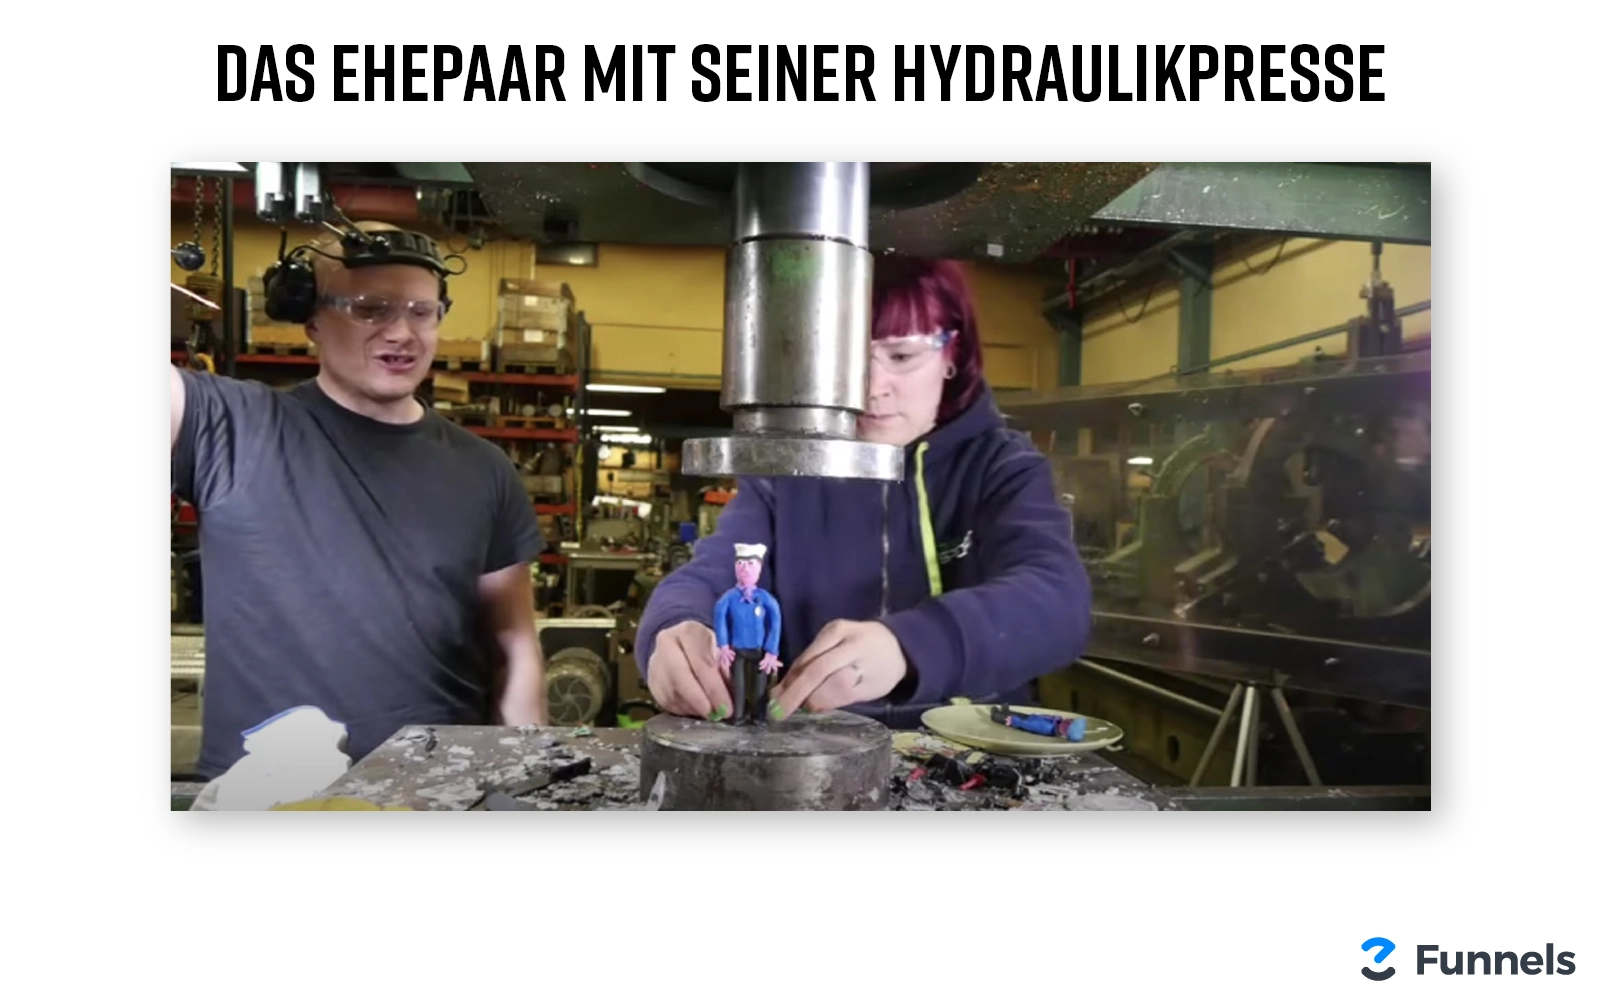 Screenshot vom YouTube-Kanal mit der speziellen Hydraulikpresse.